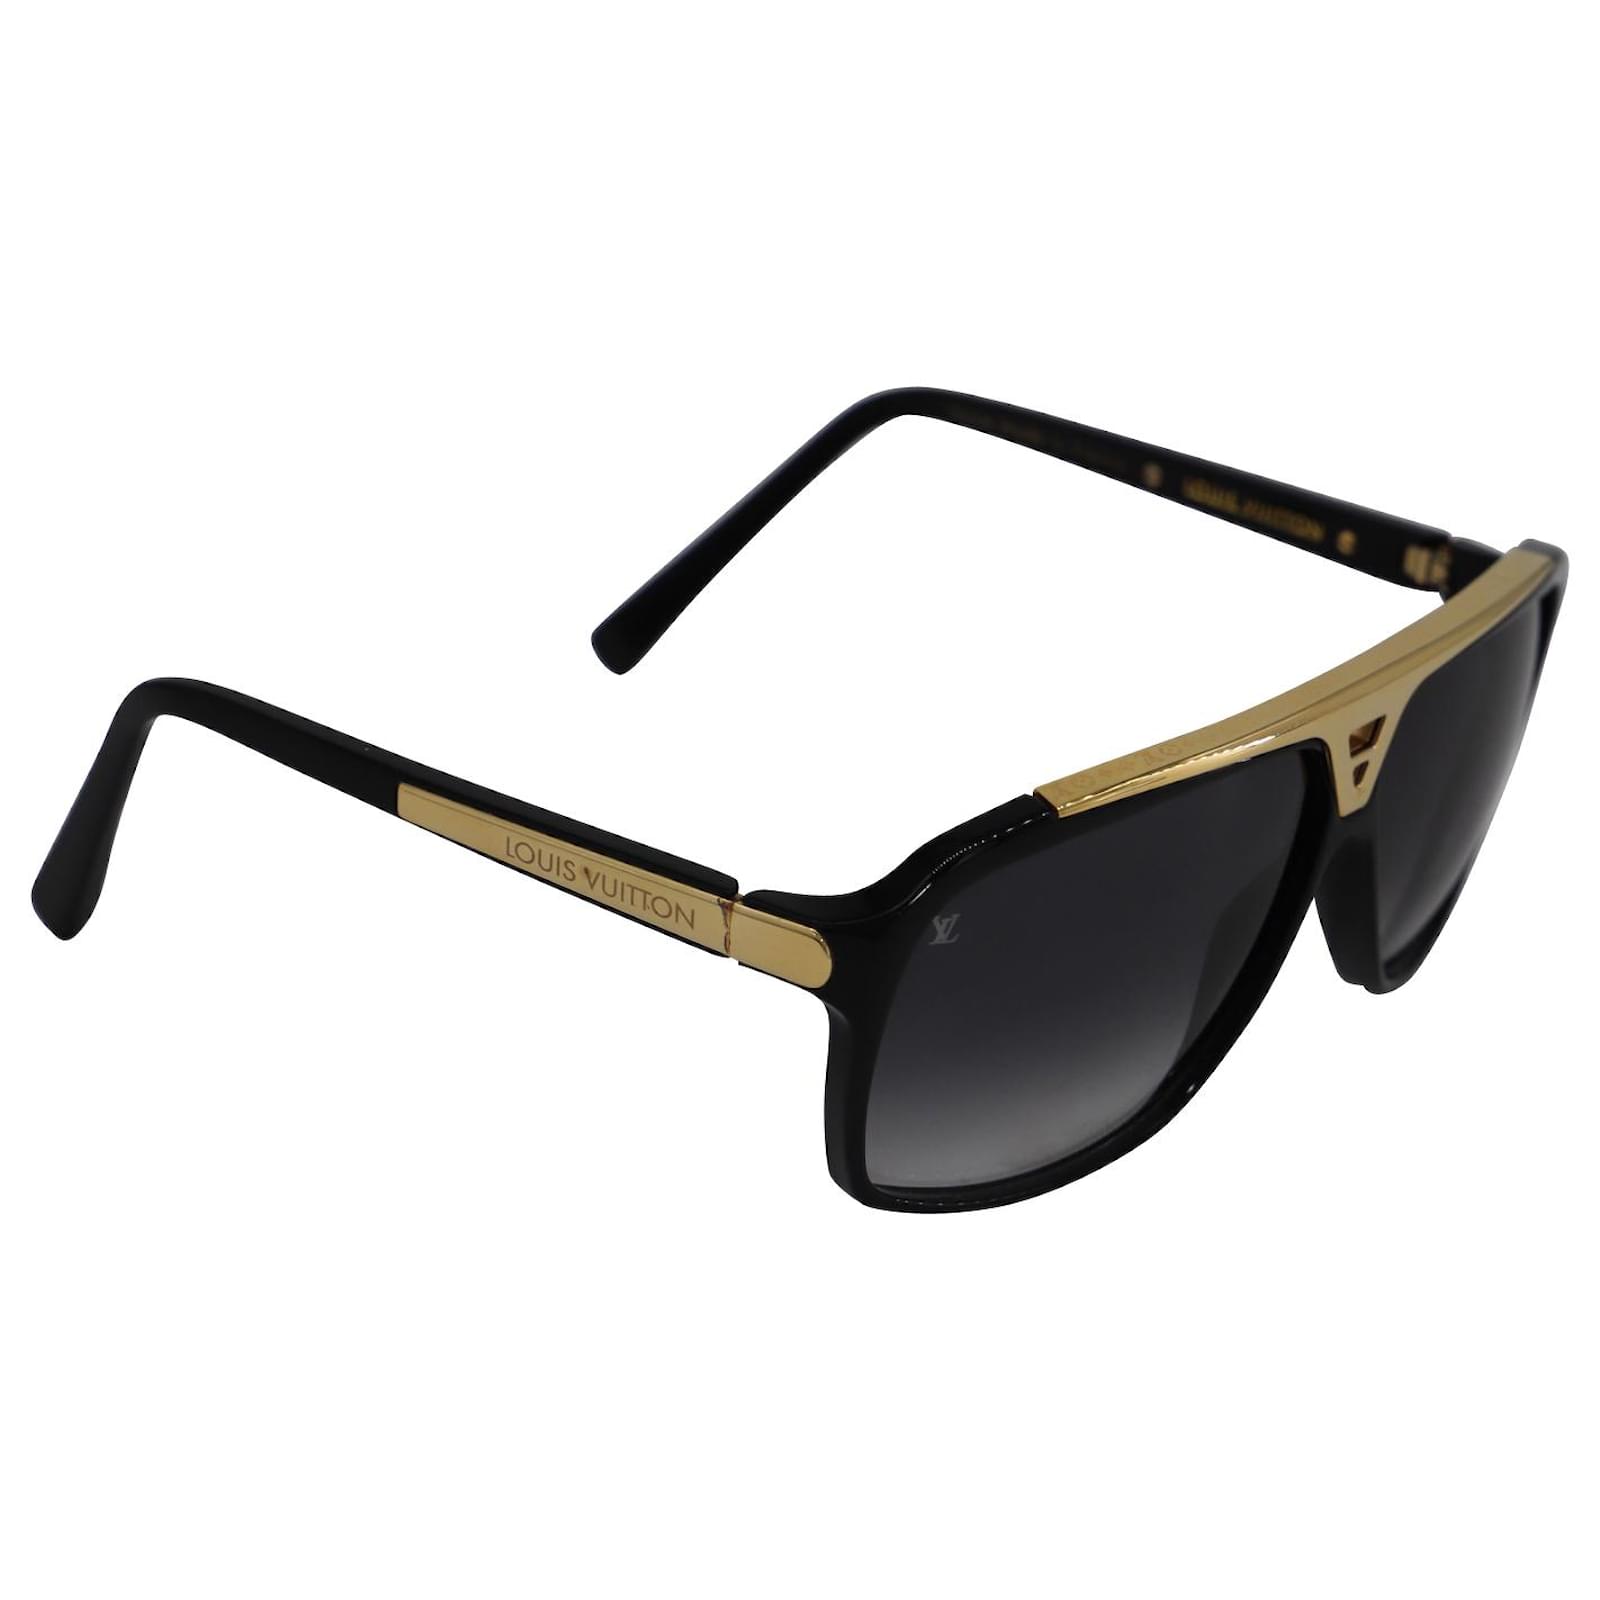 Sunglasses Louis Vuitton Black in Plastic - 35460433